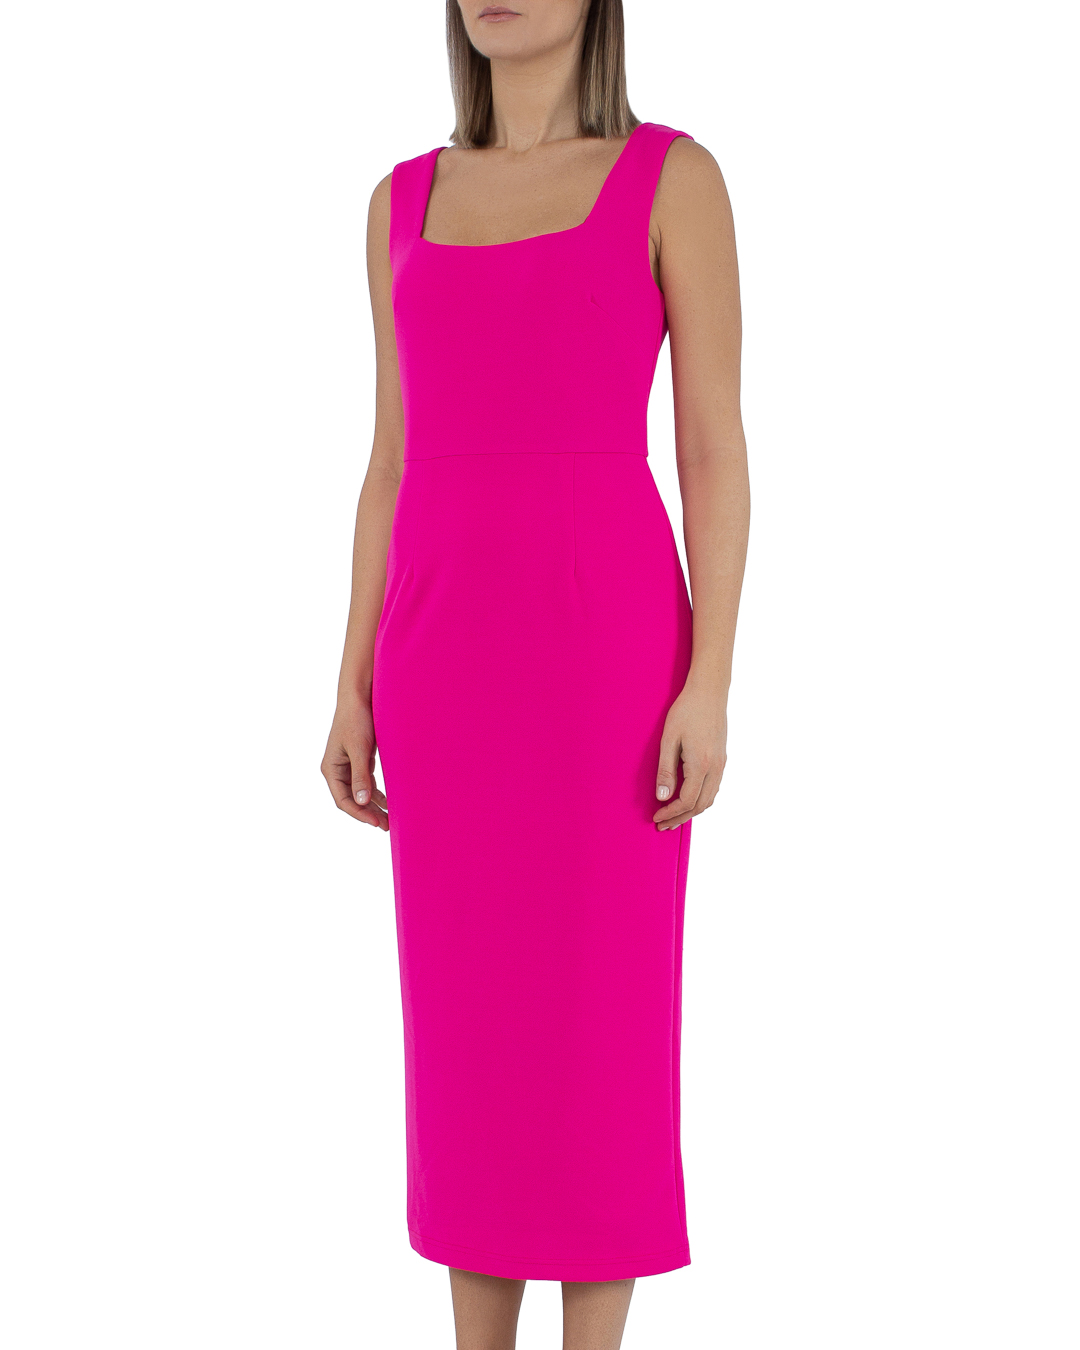 платье PASDUCHAS PD101200 розовый 12, размер 12 - фото 3